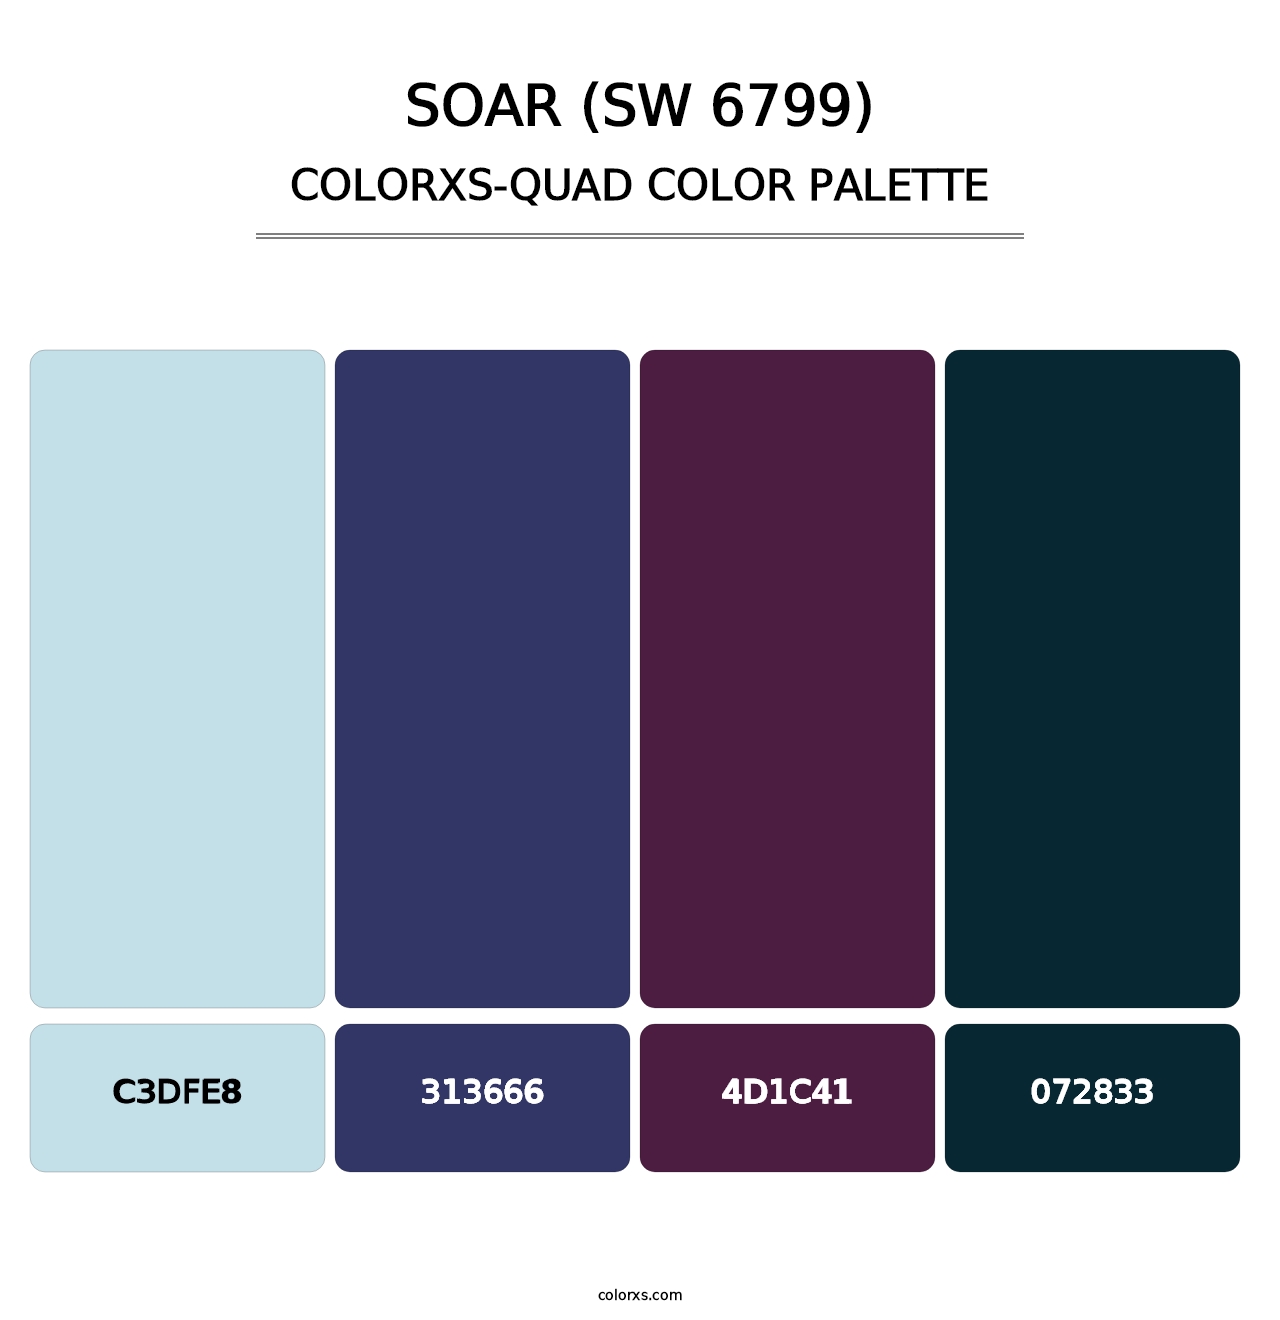 Soar (SW 6799) - Colorxs Quad Palette